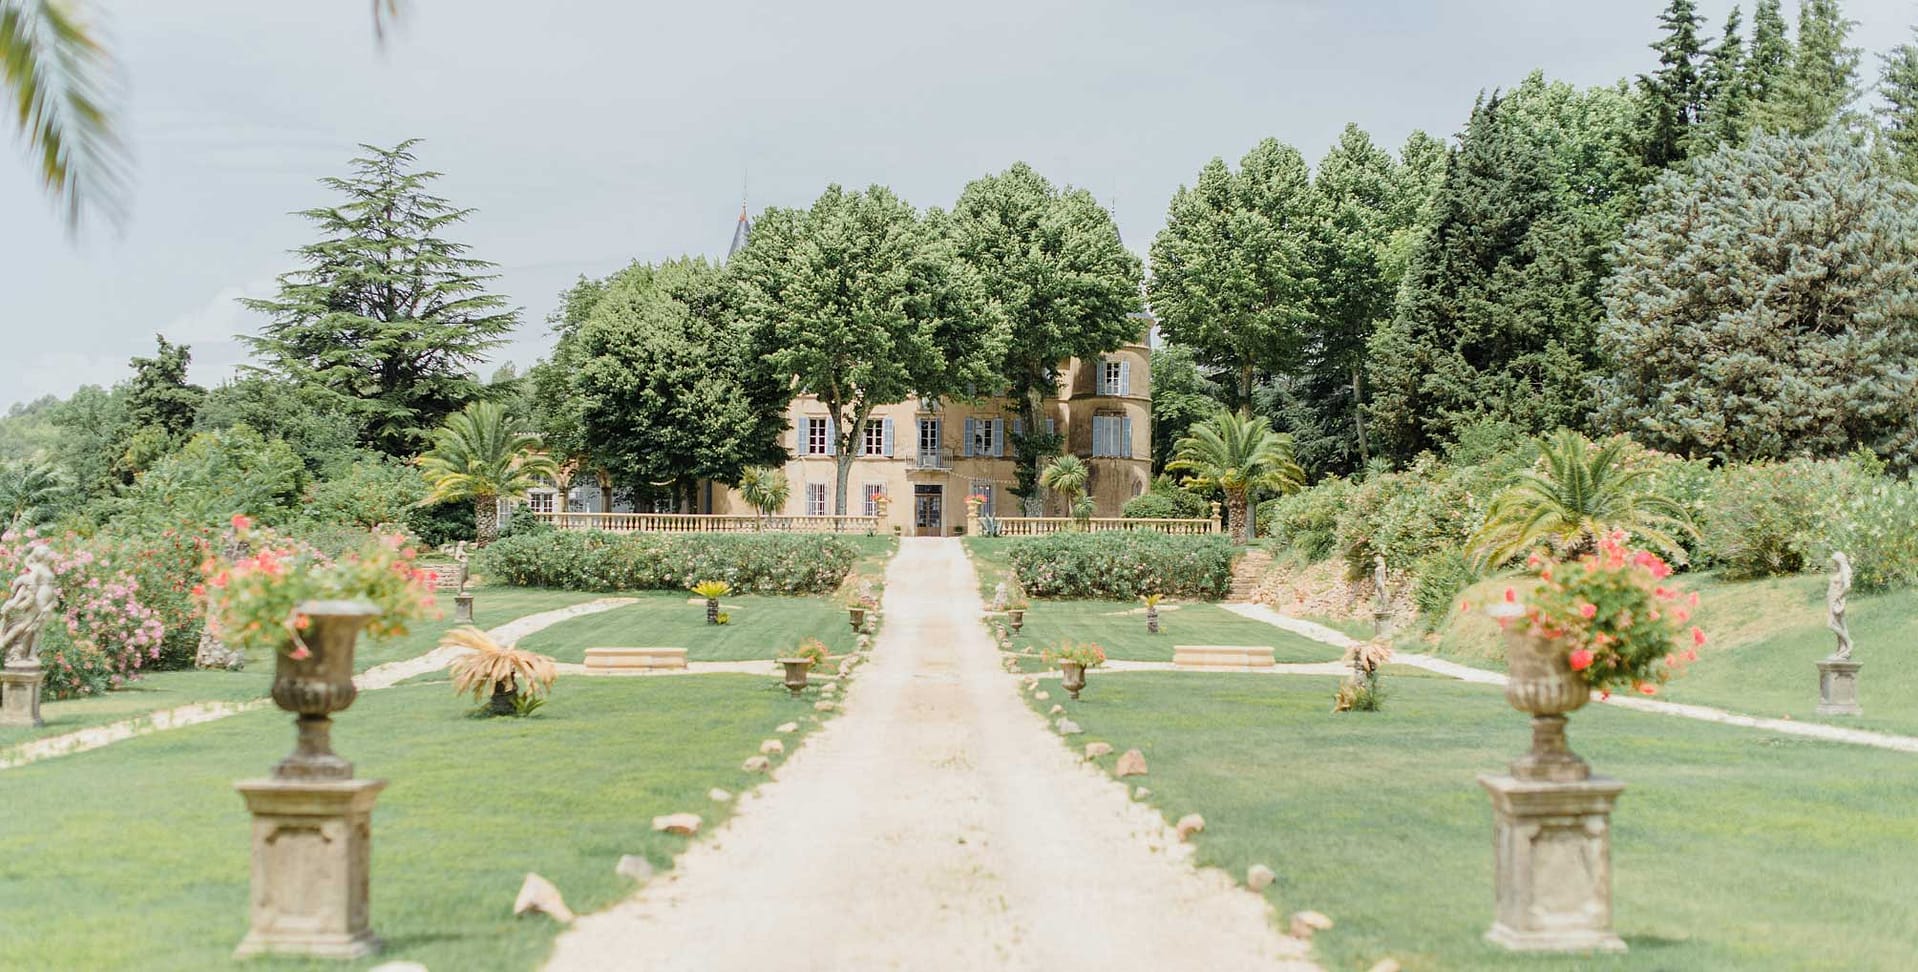 Provence wedding venue riviera